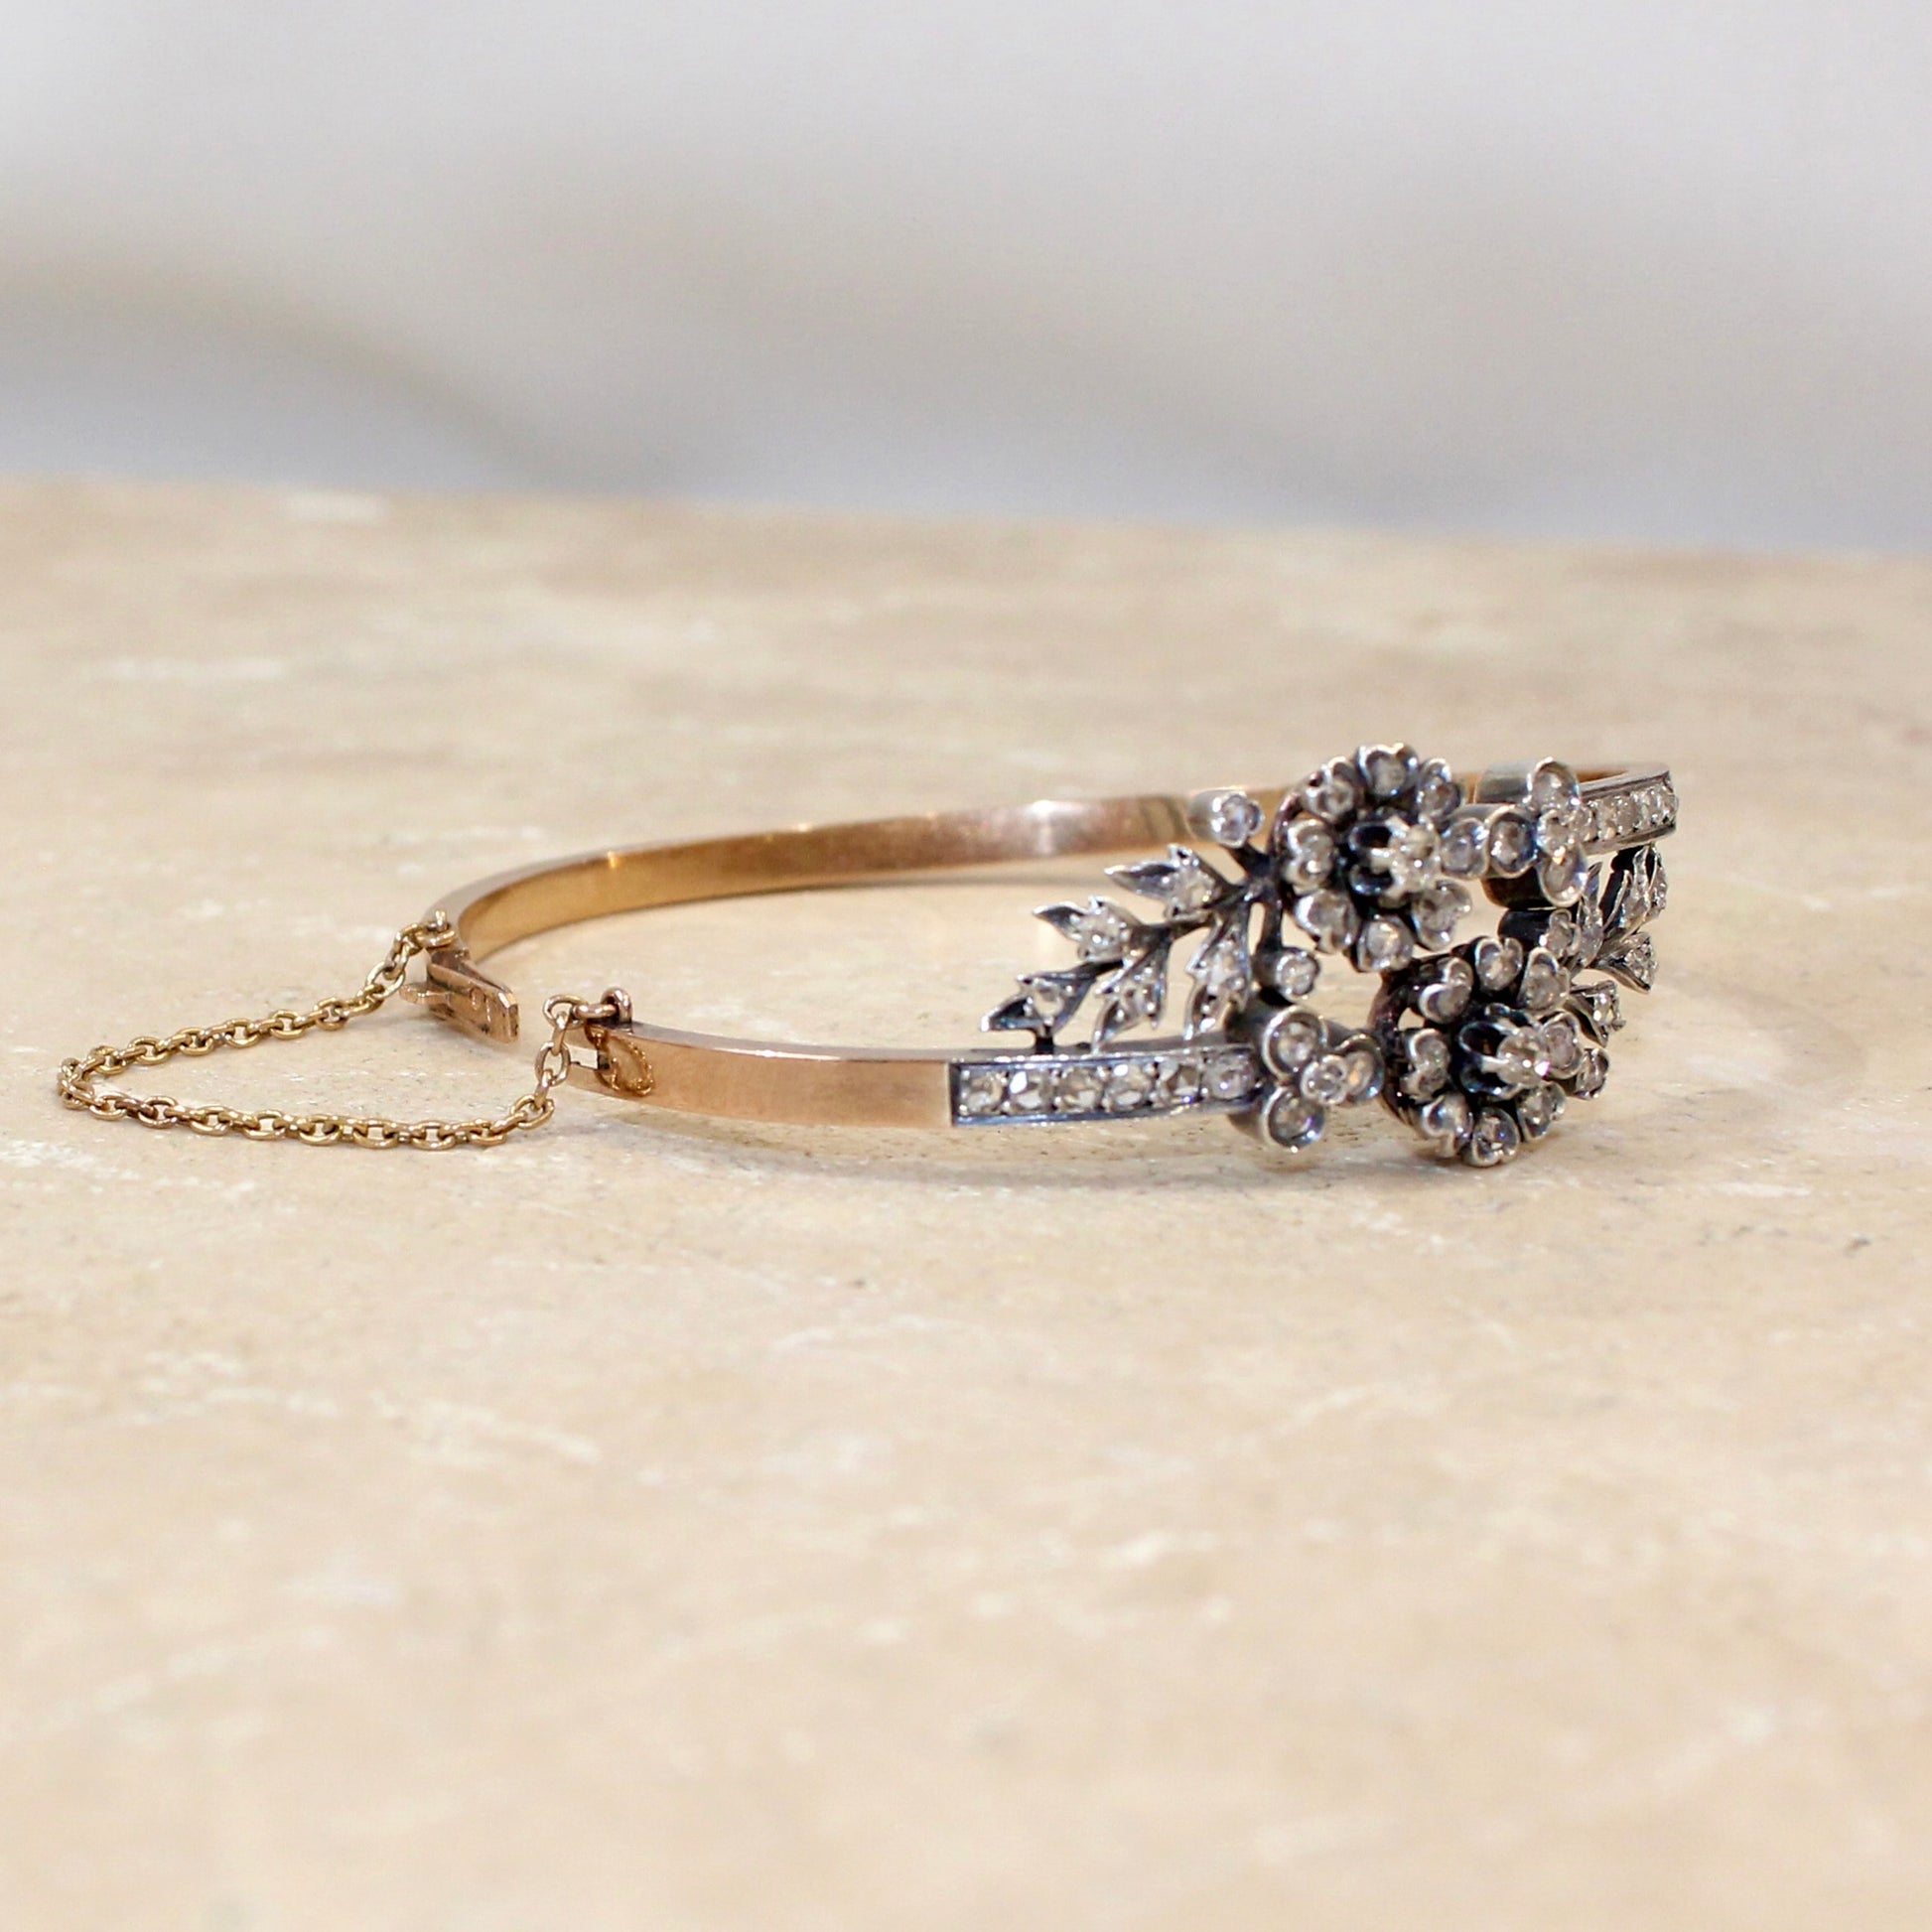 bracelet fin 19ème en or rose orné de motifs floraux- diamants taille rose sertis sur argent